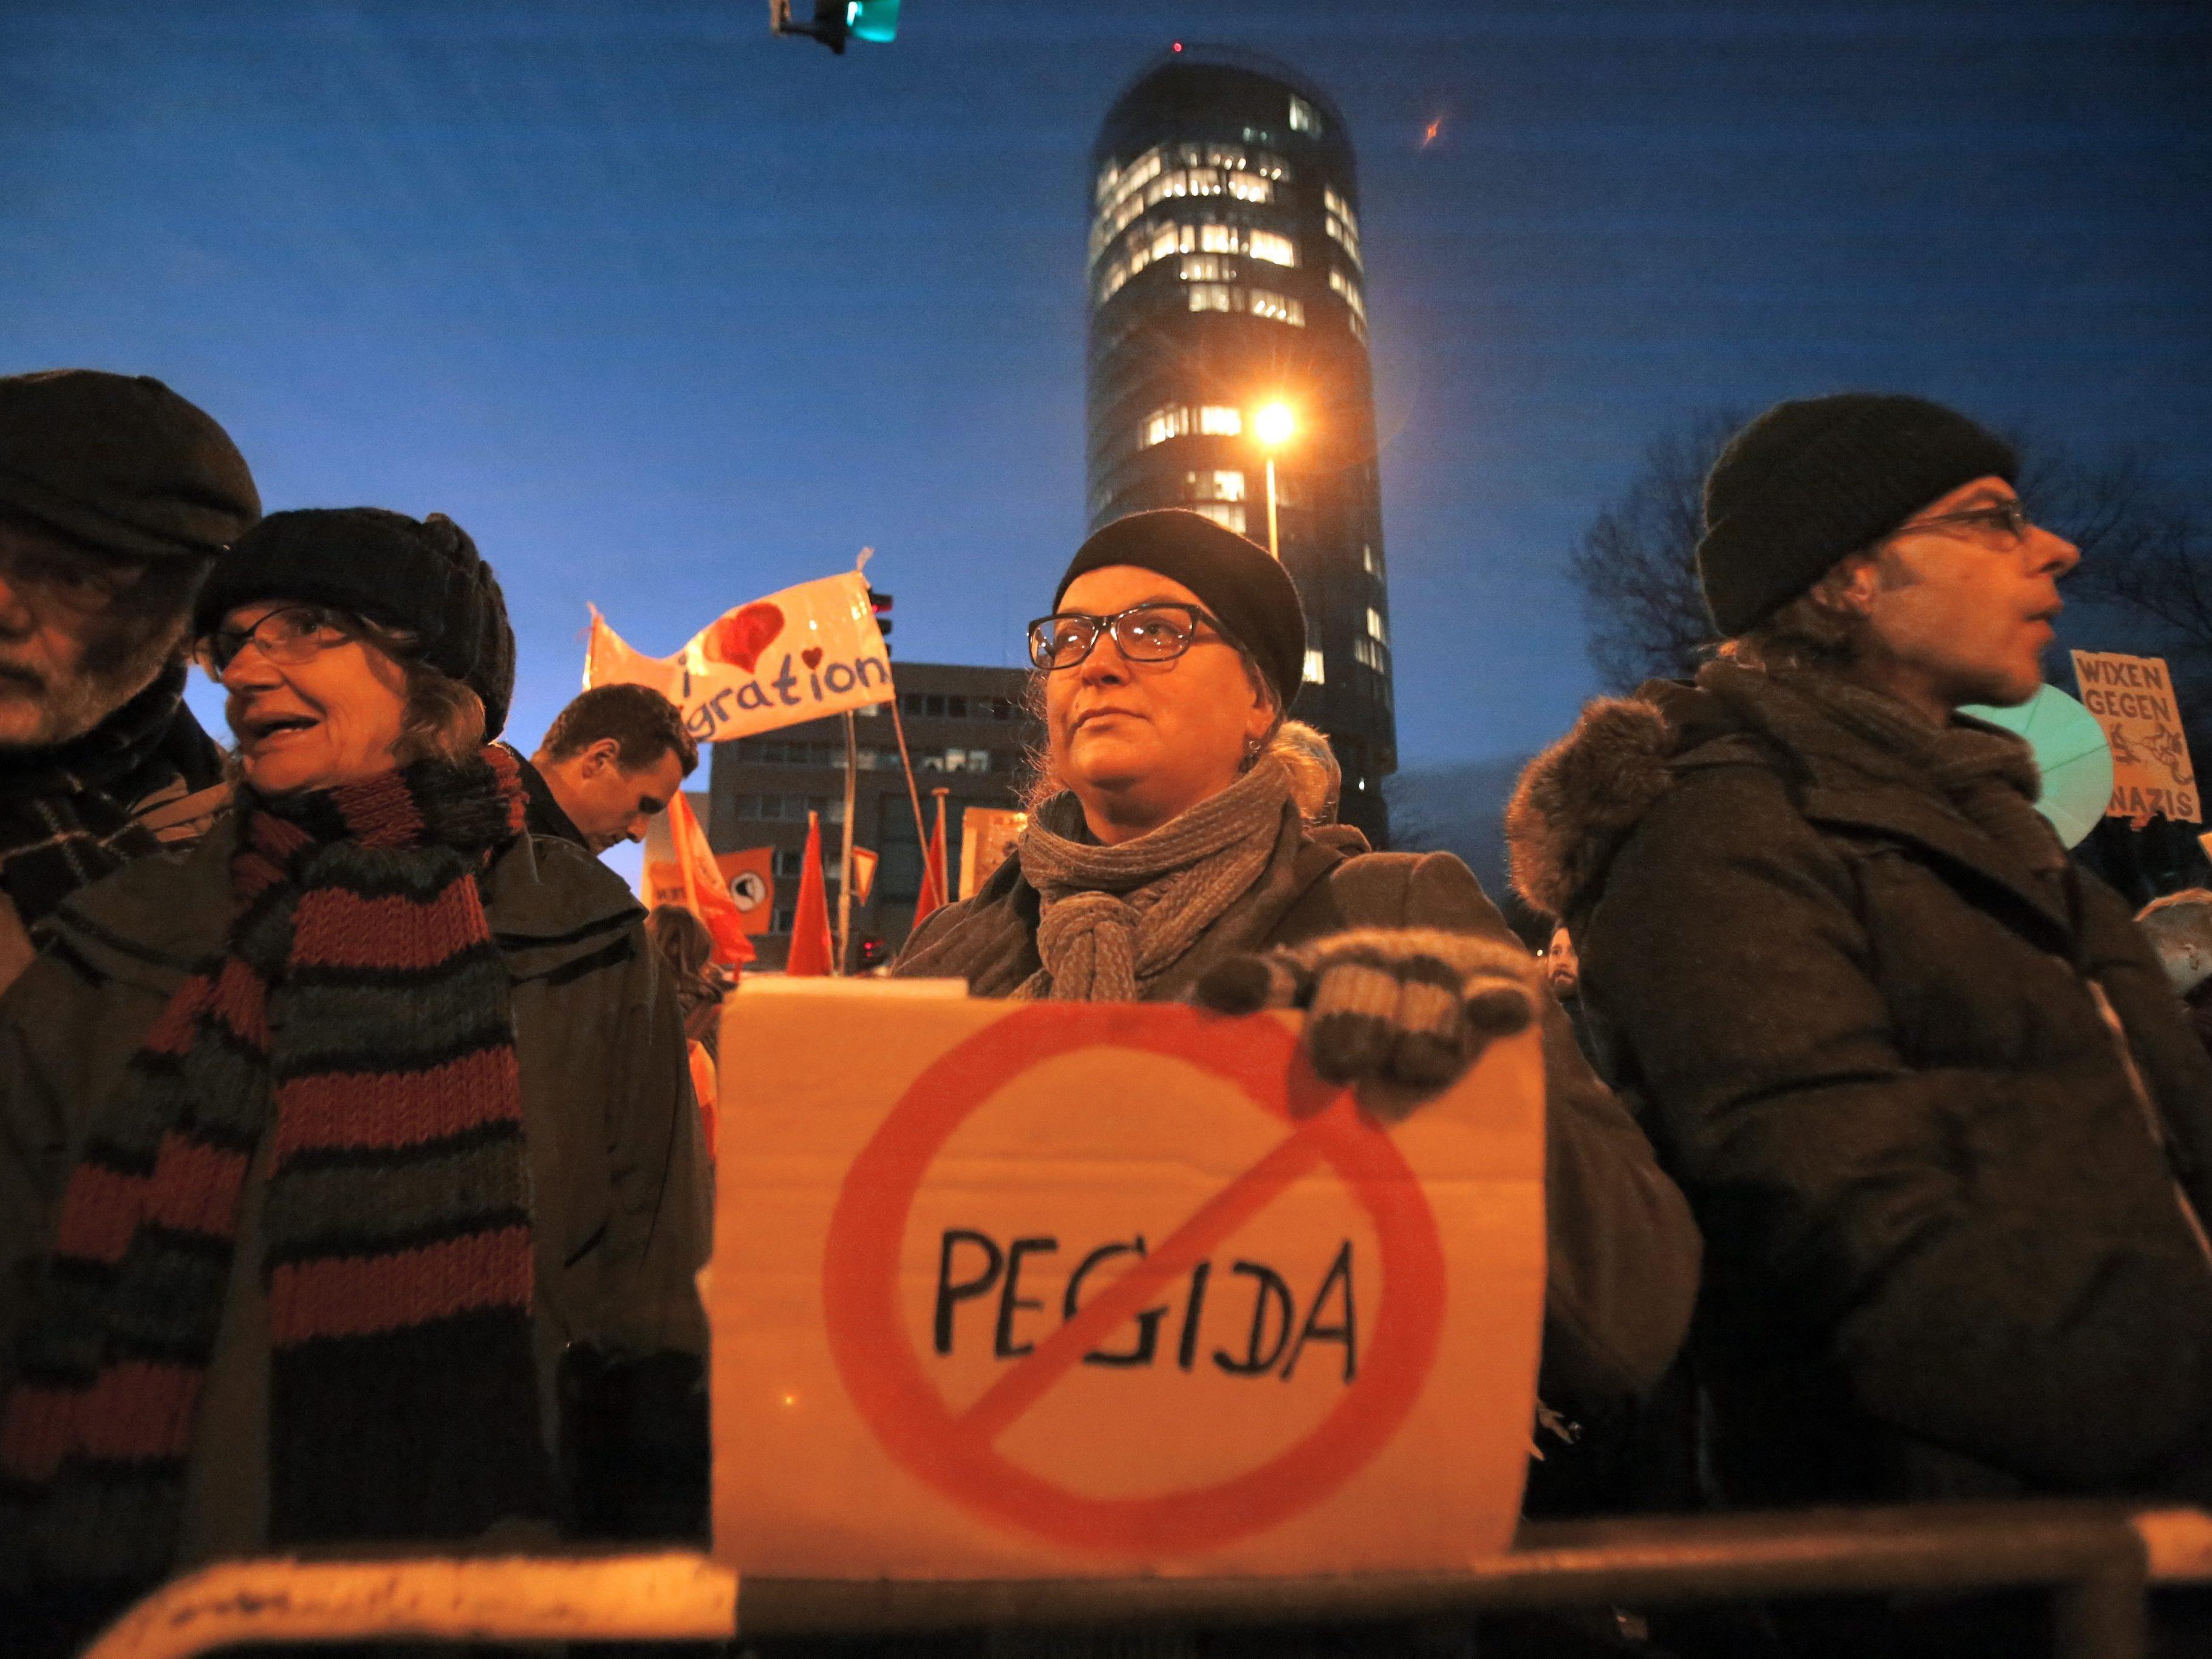 Pegida: Offenbar 3 - Auch Gegendemonstrationen geplant